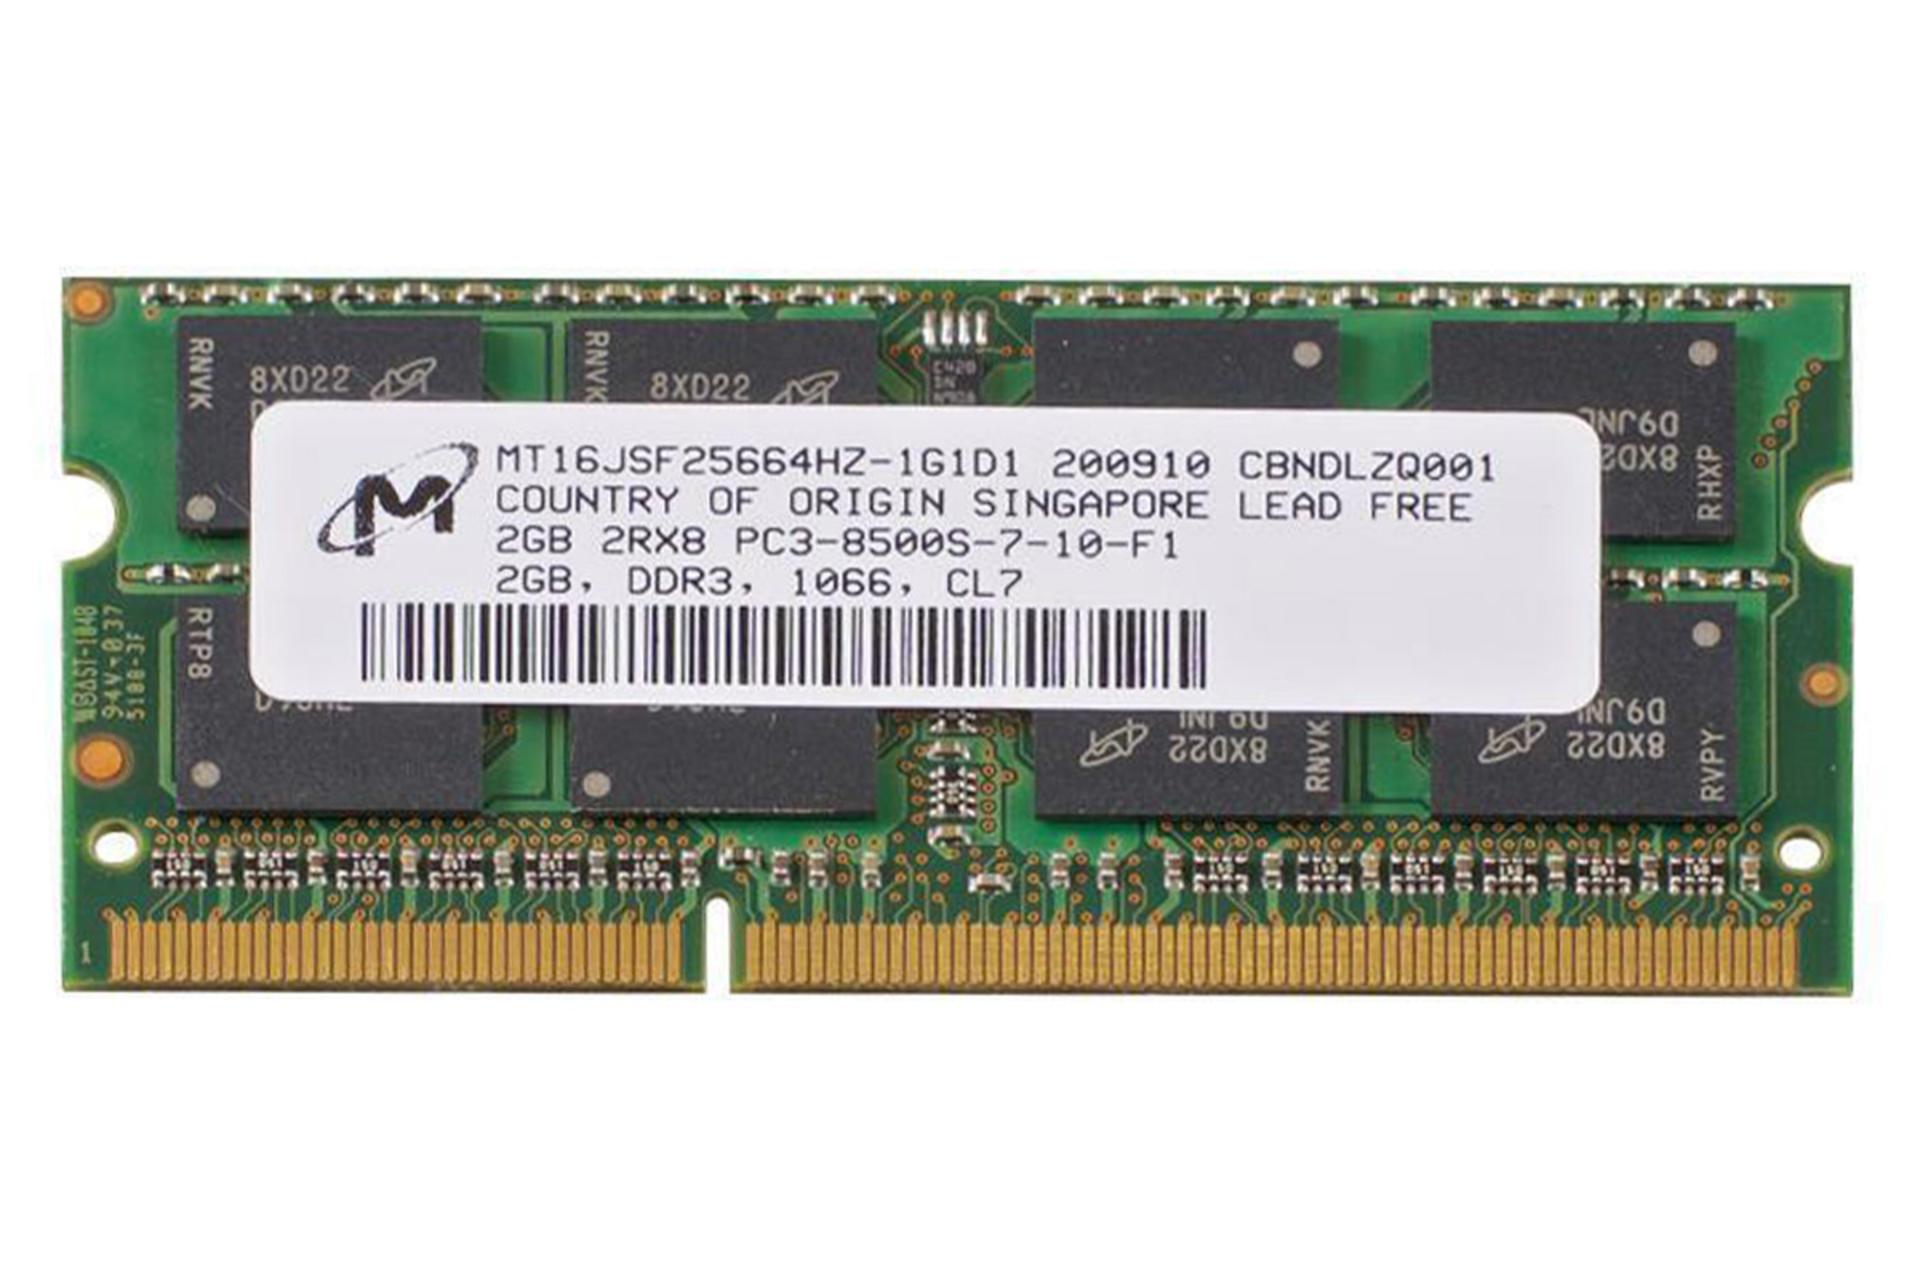 رم مایکرون Micron MT16JSF25664HZ-1G1D1 2GB DDR3-1066 CL7